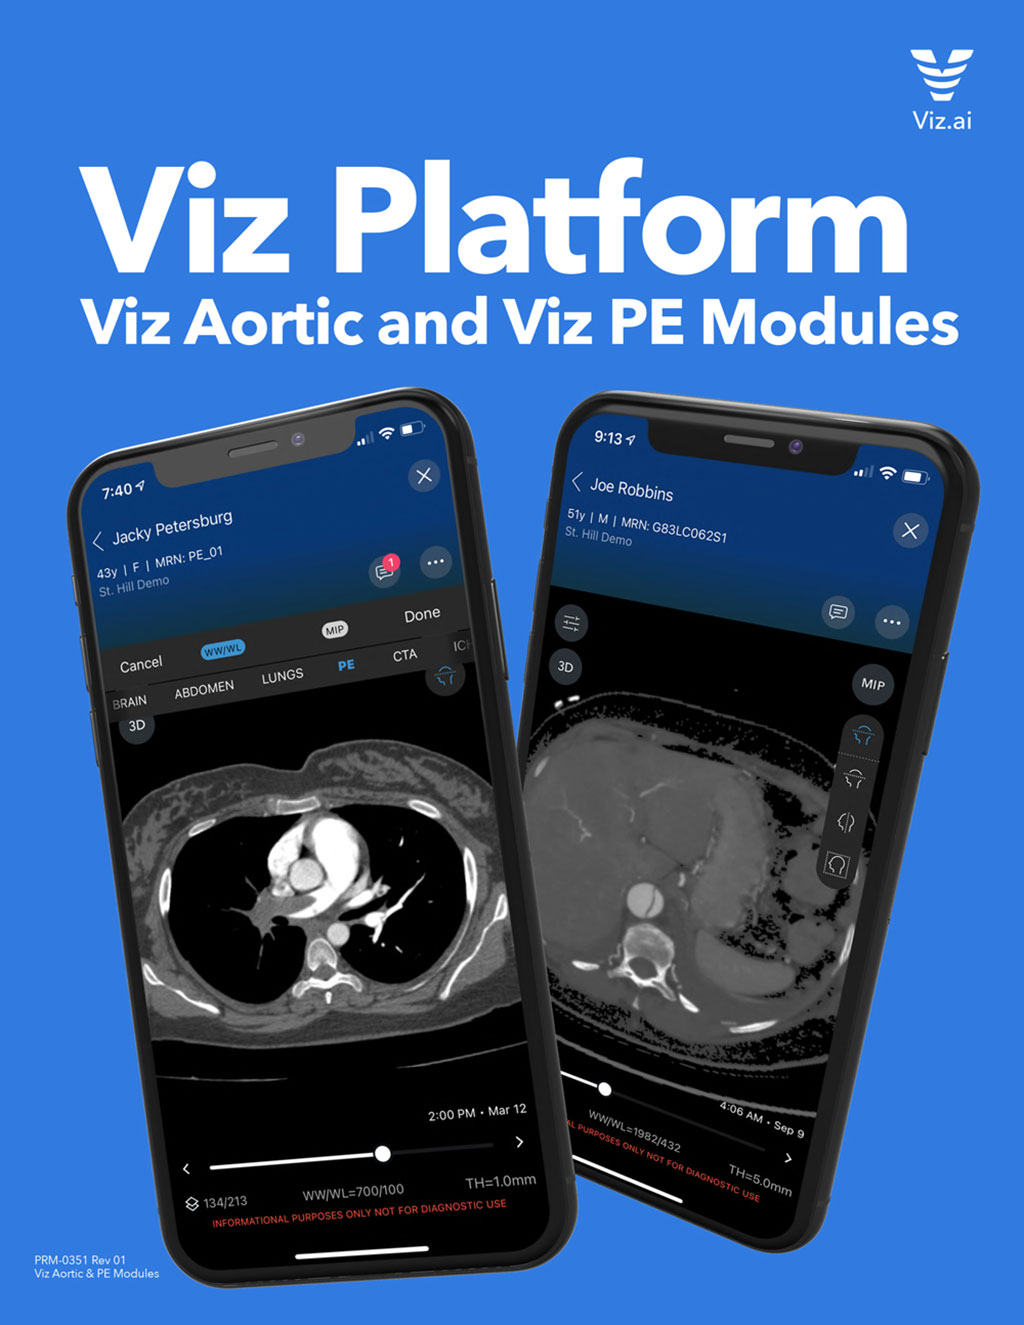 Imagen: Los módulos Viz aortic y Viz PE (Fotografía cortesía de Viz.ai, Inc.)